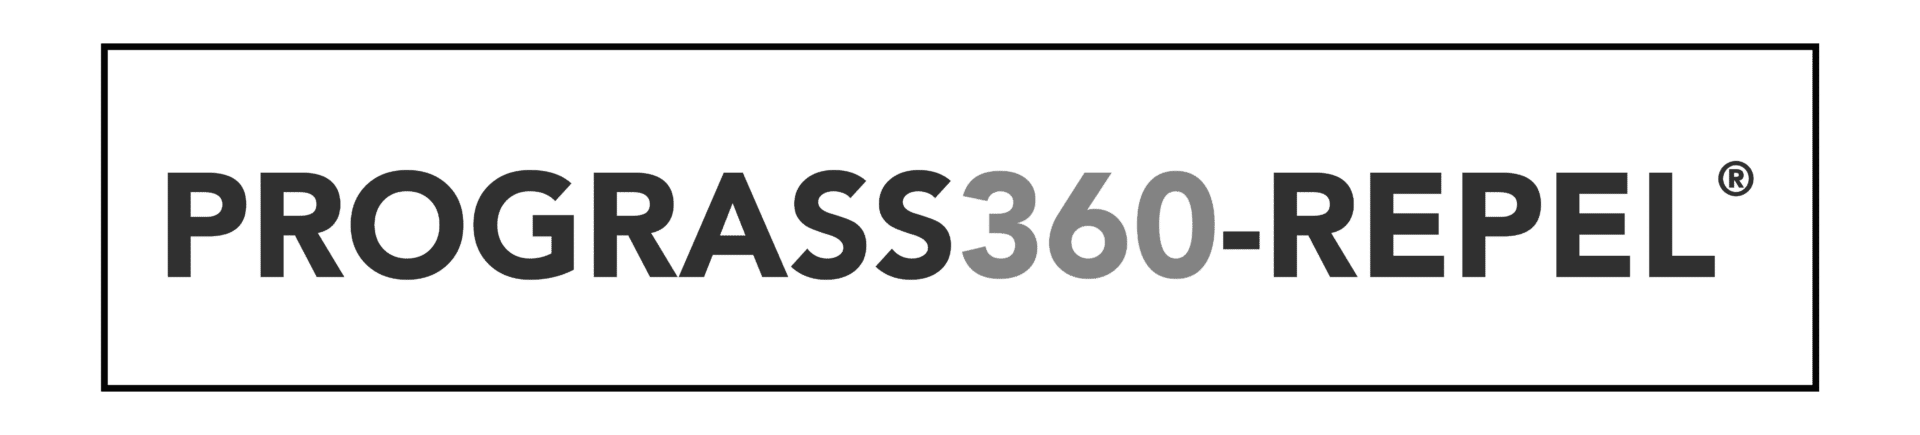 Prograss360 Repel